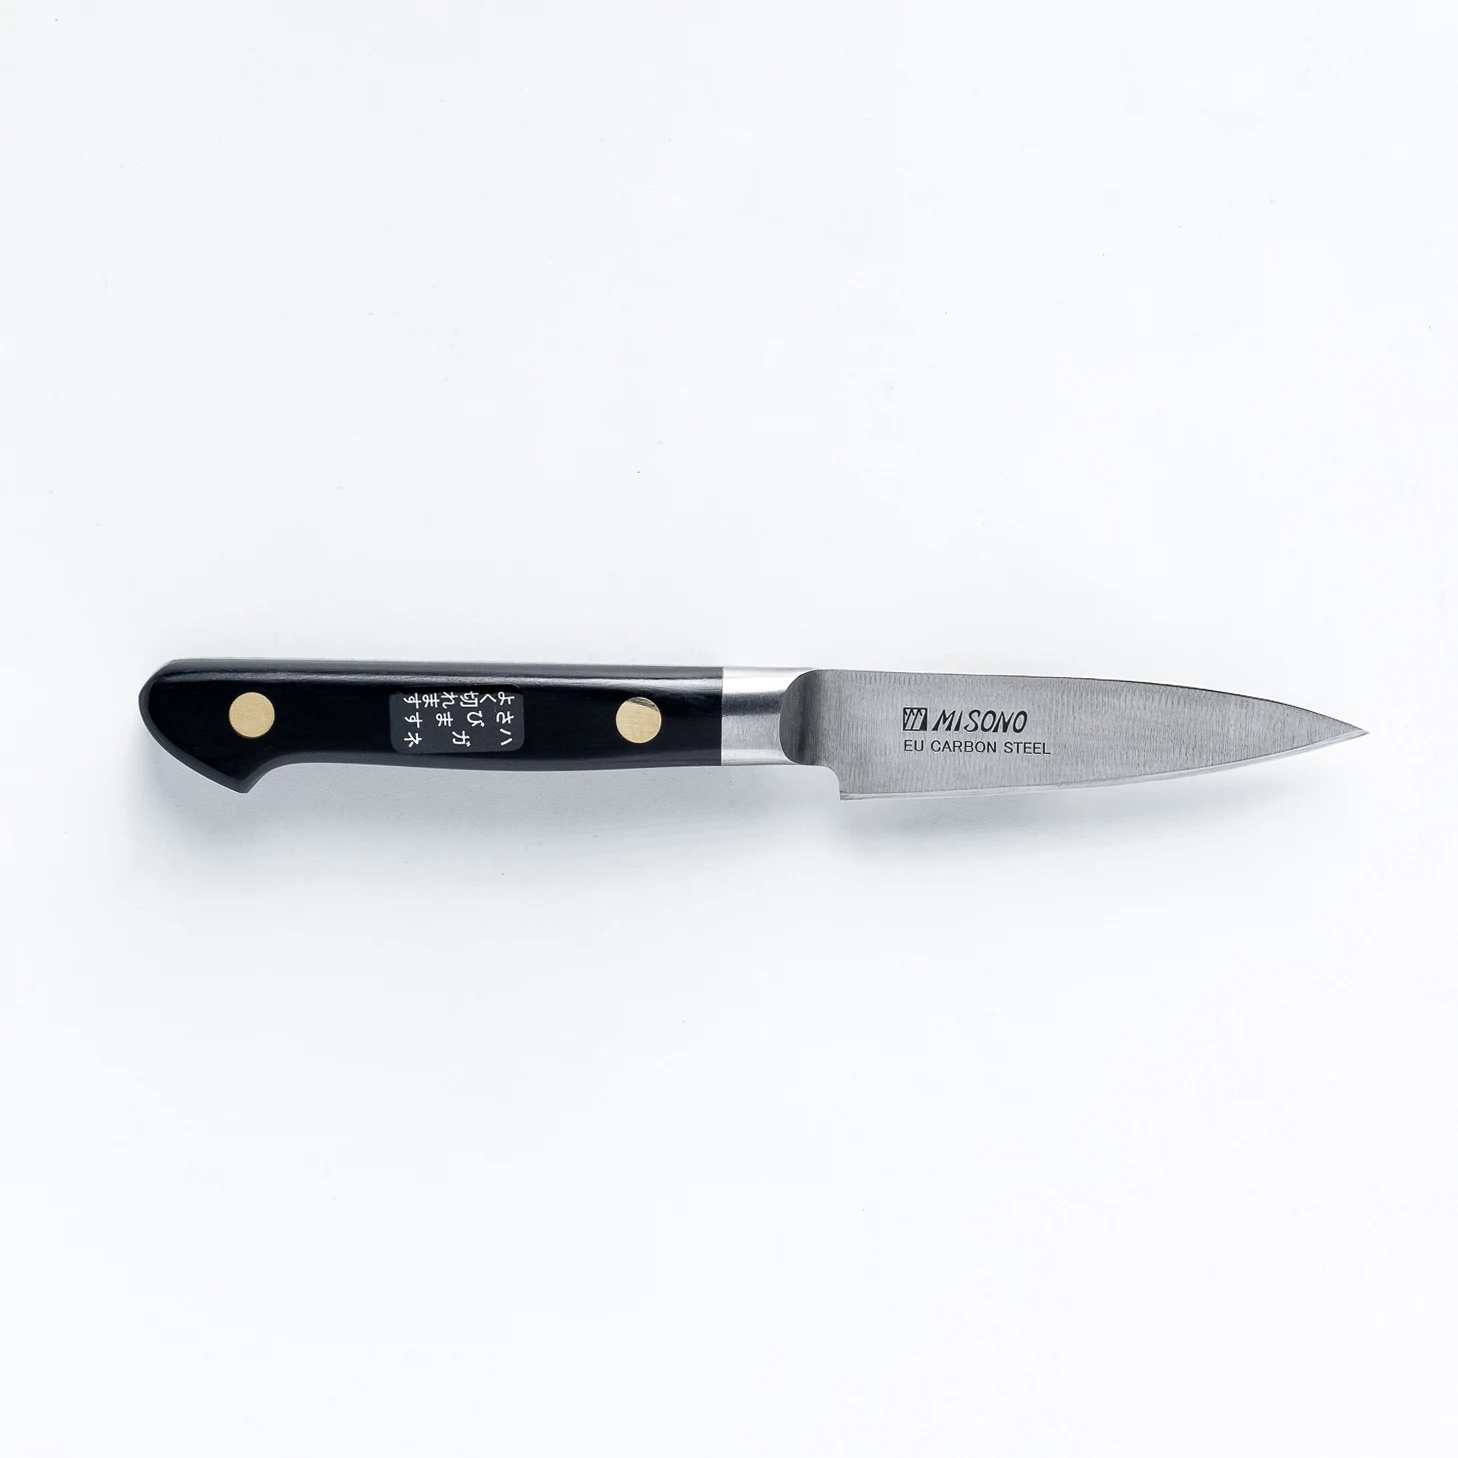 סכין עזר קטנה פטי 80מ״מ פלדת EU Carbon גימור מט מלוטש מיסונו יפן מק״ט SKMISMSO1342349